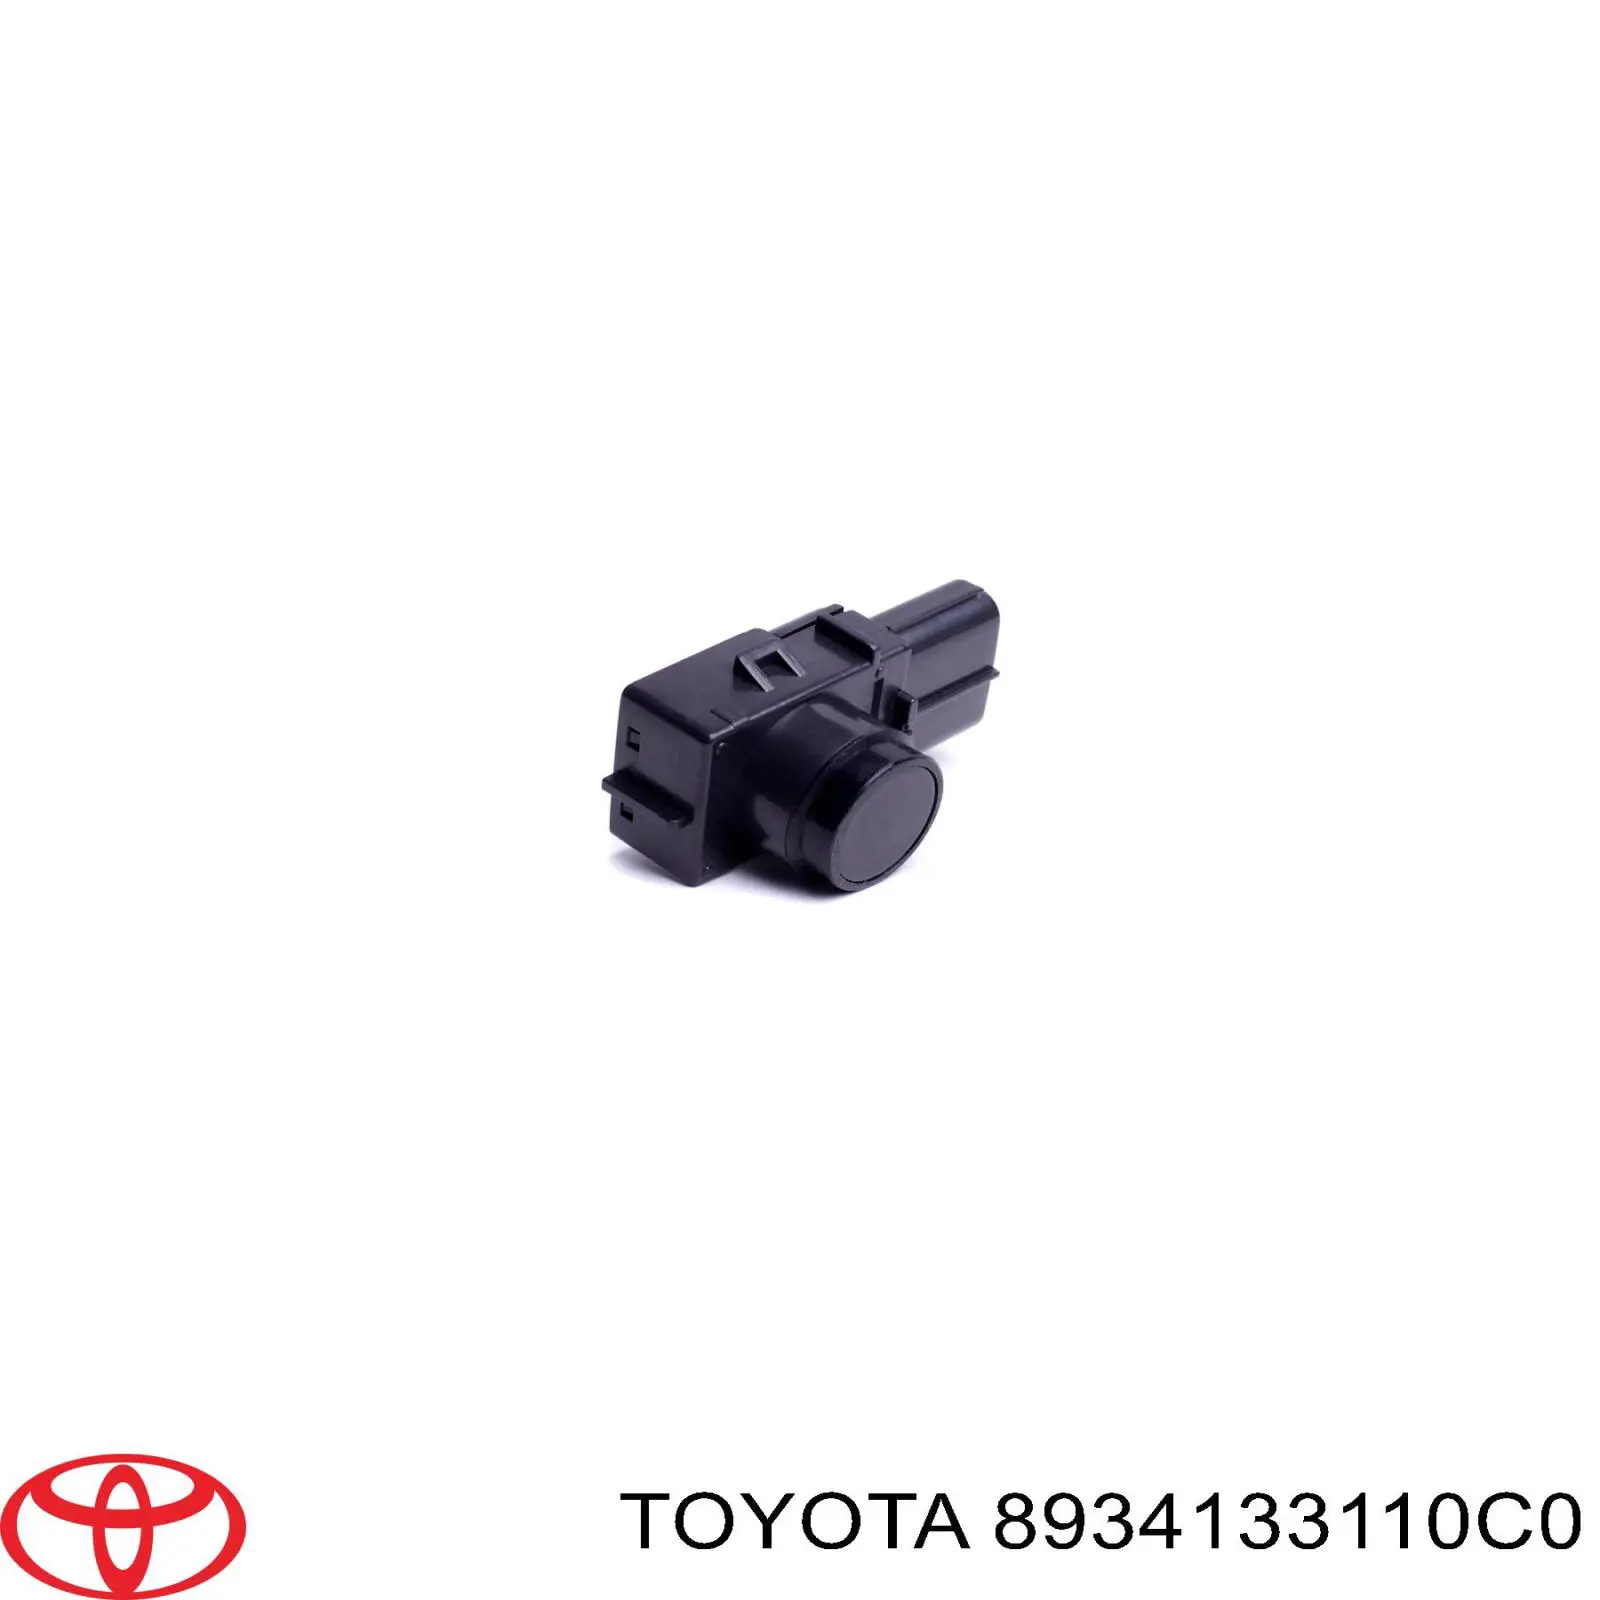 8934133110C0 Toyota sensor de alarma de estacionamiento(packtronic Delantero/Trasero Central)